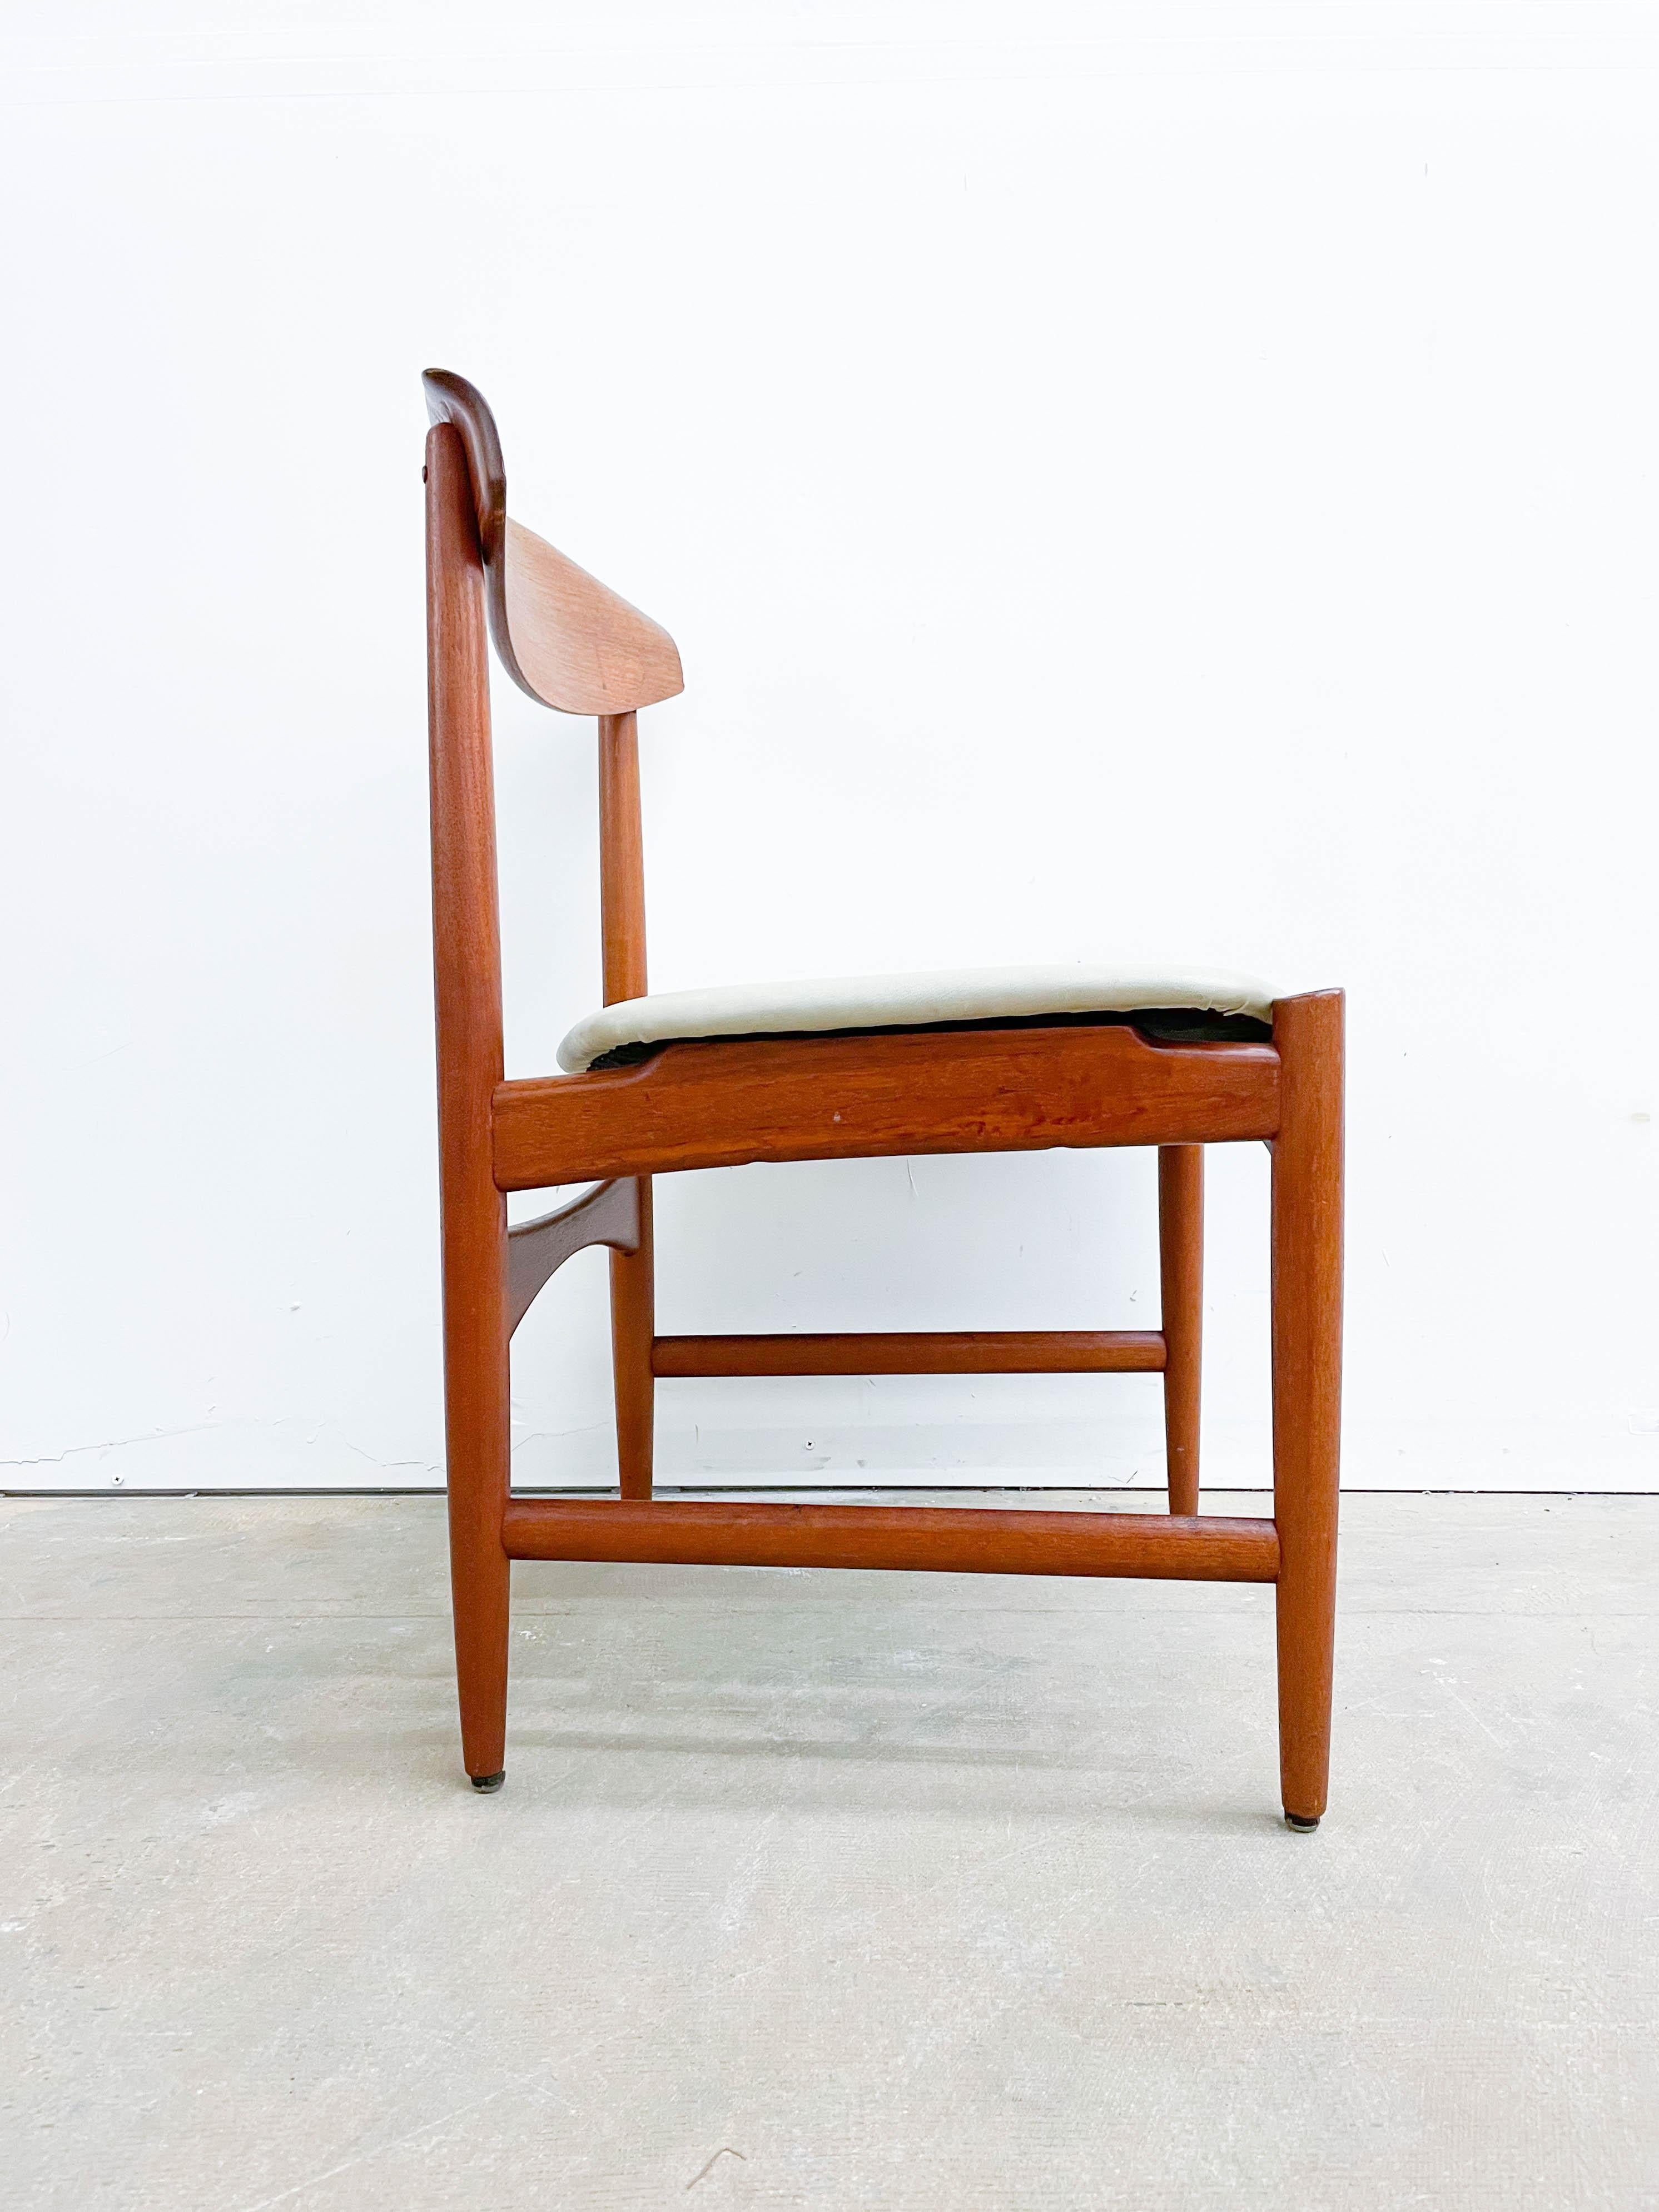 Il s'agit d'un exemple rare de chaise d'appoint en teck avec un dossier en bois courbé, conçue par Kofod Larsen et fabriquée et distribuée par Selig. Cette superbe chaise des années 1950 est l'exemple même du design moderne danois du milieu du